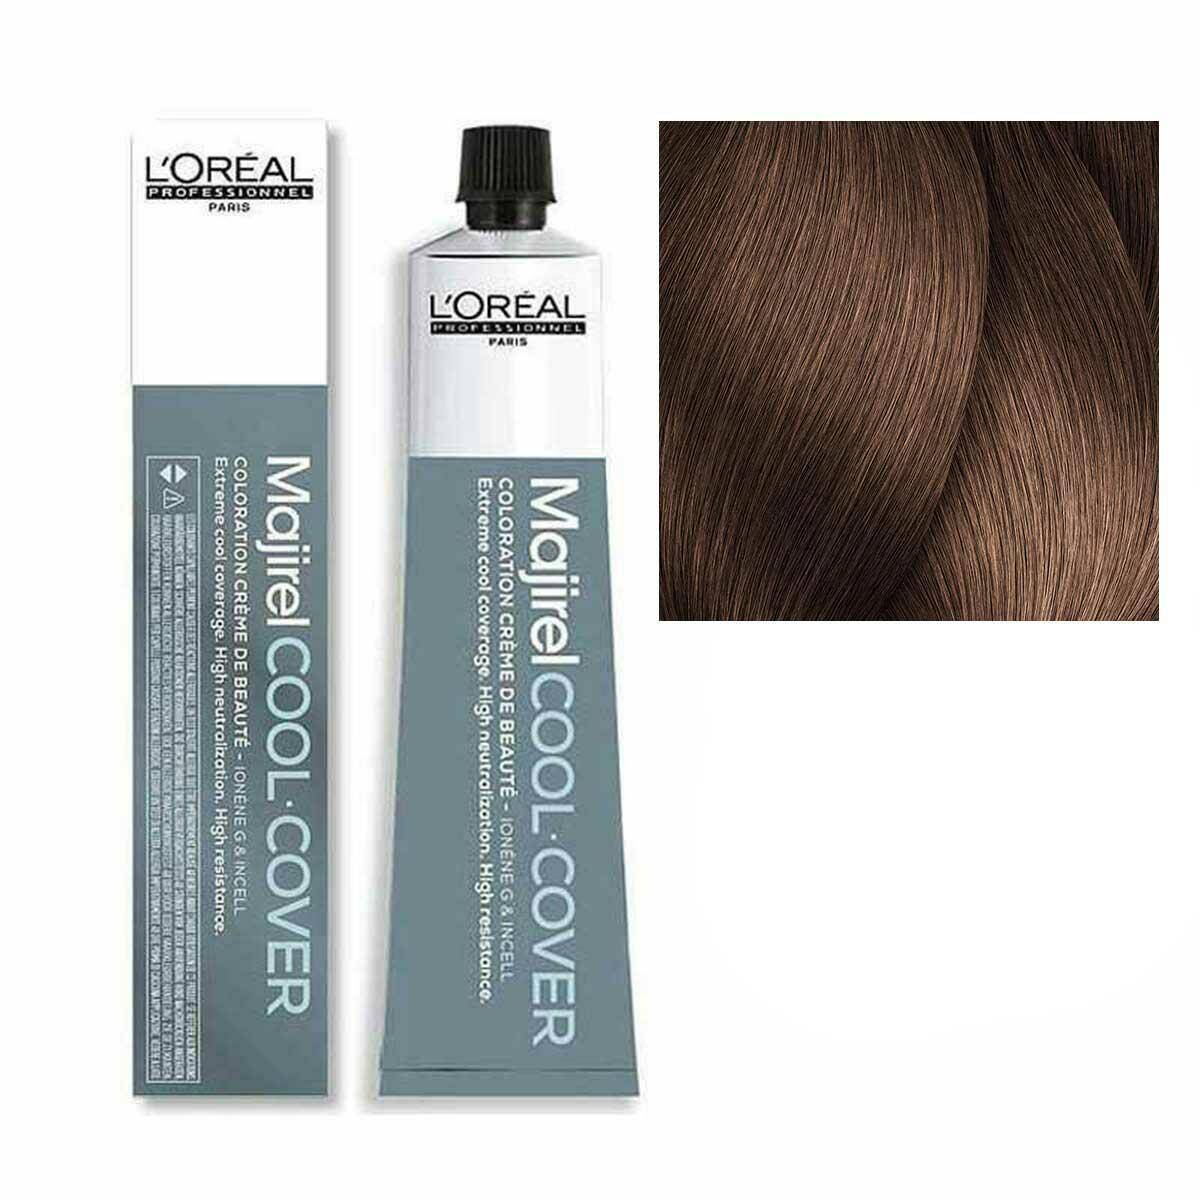 Loreal Majirel Cool Cover Farba do włosów - 7.82 Blond mokka opalizujący 50ml